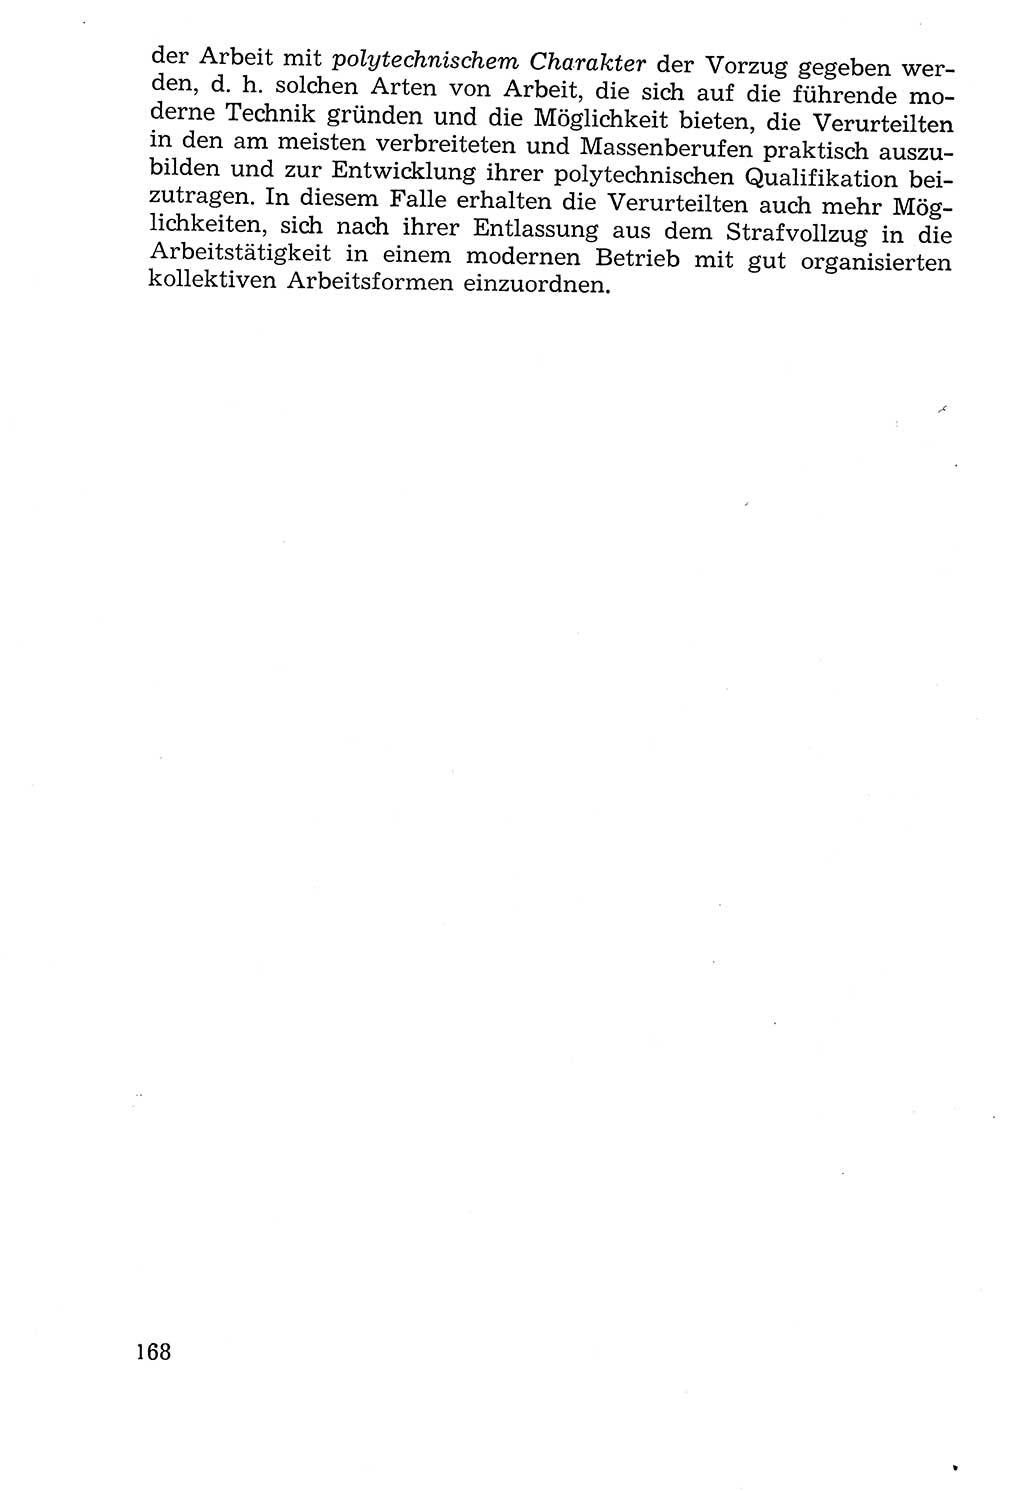 Lehrbuch der Strafvollzugspädagogik [Deutsche Demokratische Republik (DDR)] 1969, Seite 168 (Lb. SV-Pd. DDR 1969, S. 168)